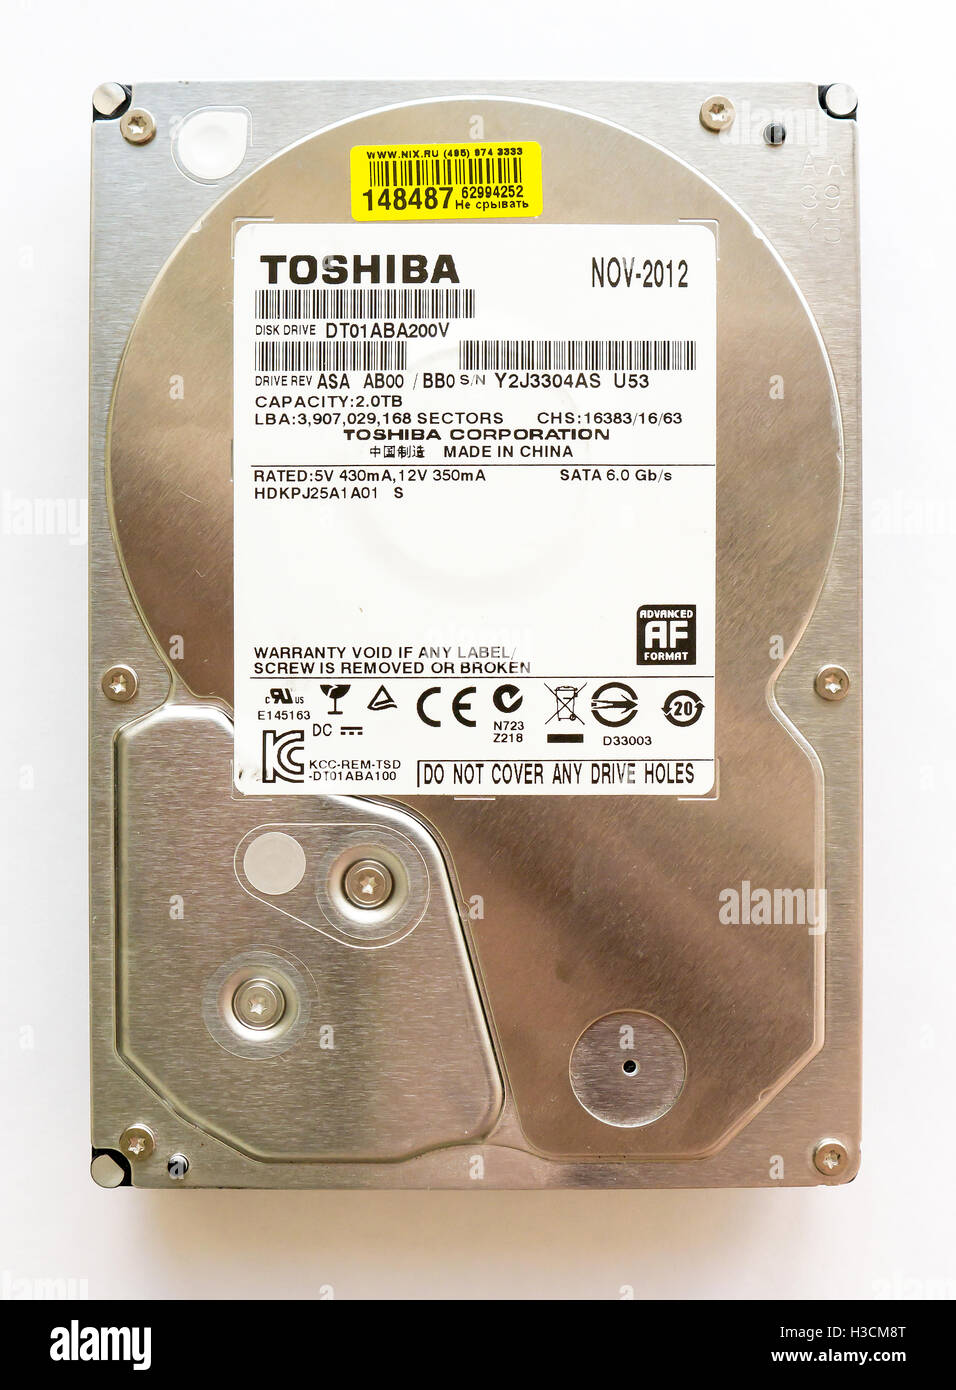 Toshiba Disque dur 2 To DT01ABA200C. Toshiba Corporation est un conglomérat multinational japonais dont le siège se trouve au Japon. Banque D'Images